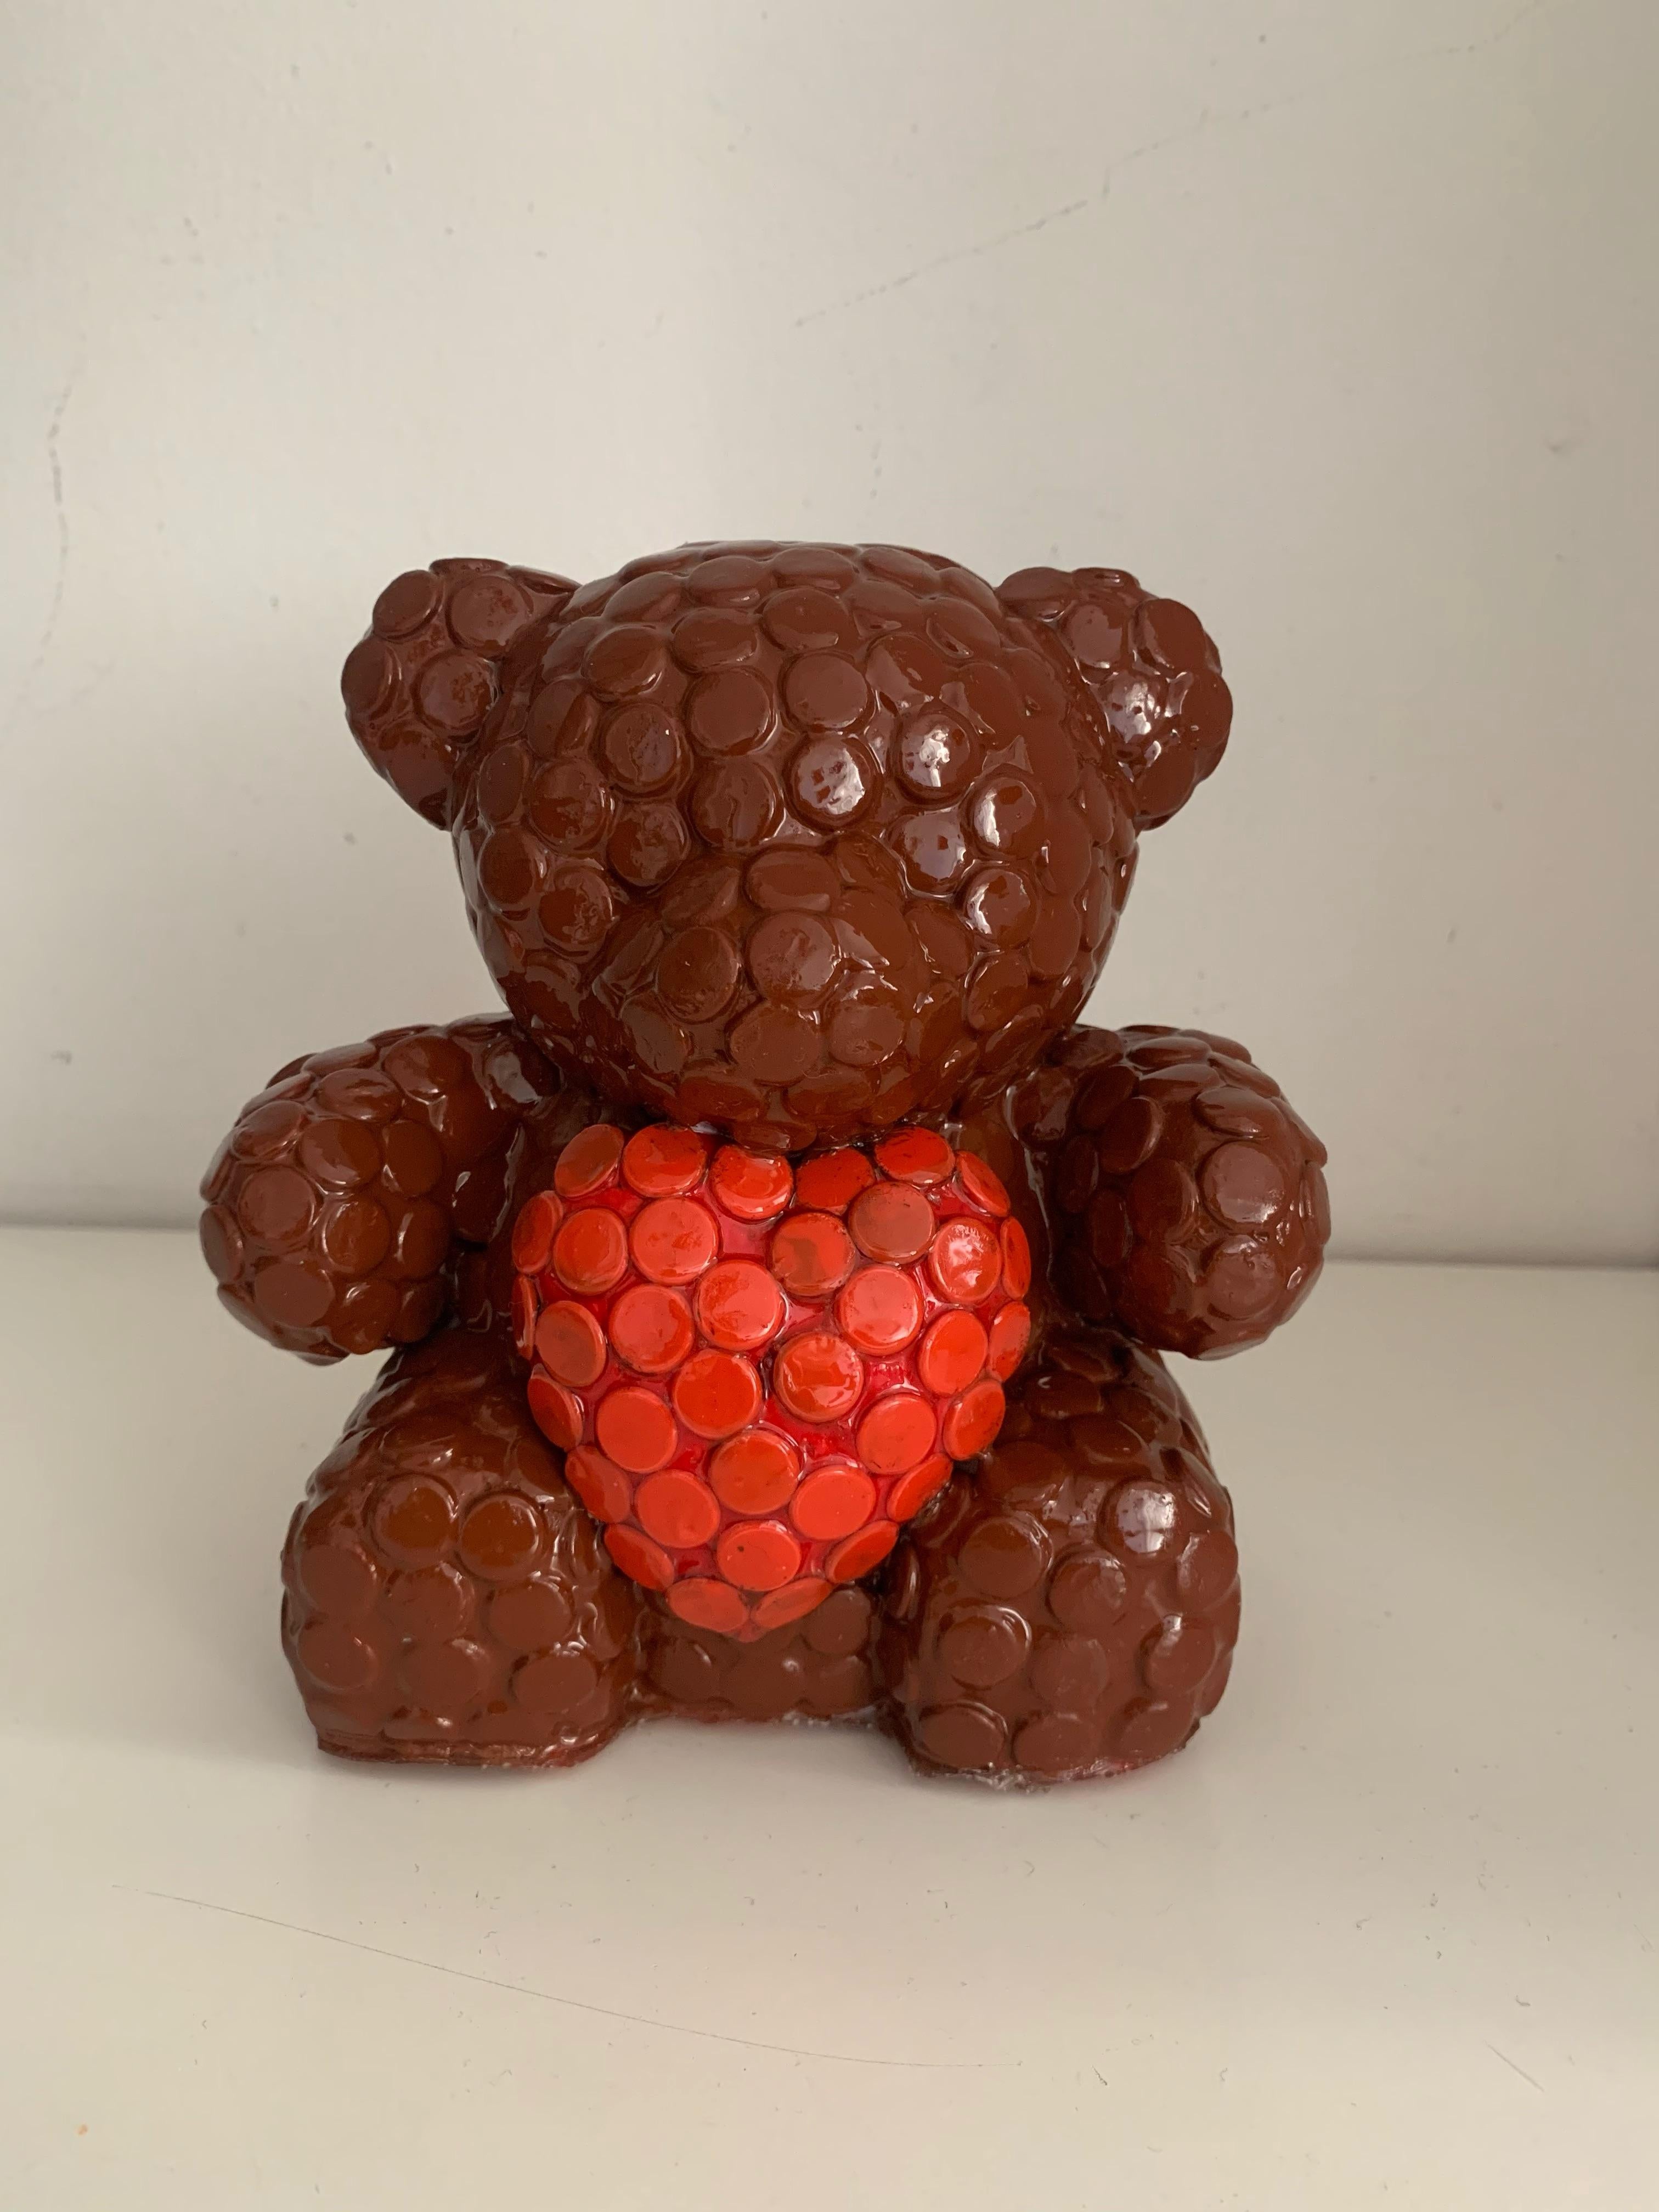 Alessandra Pierelli Figurative Sculpture - Chocolate Bear